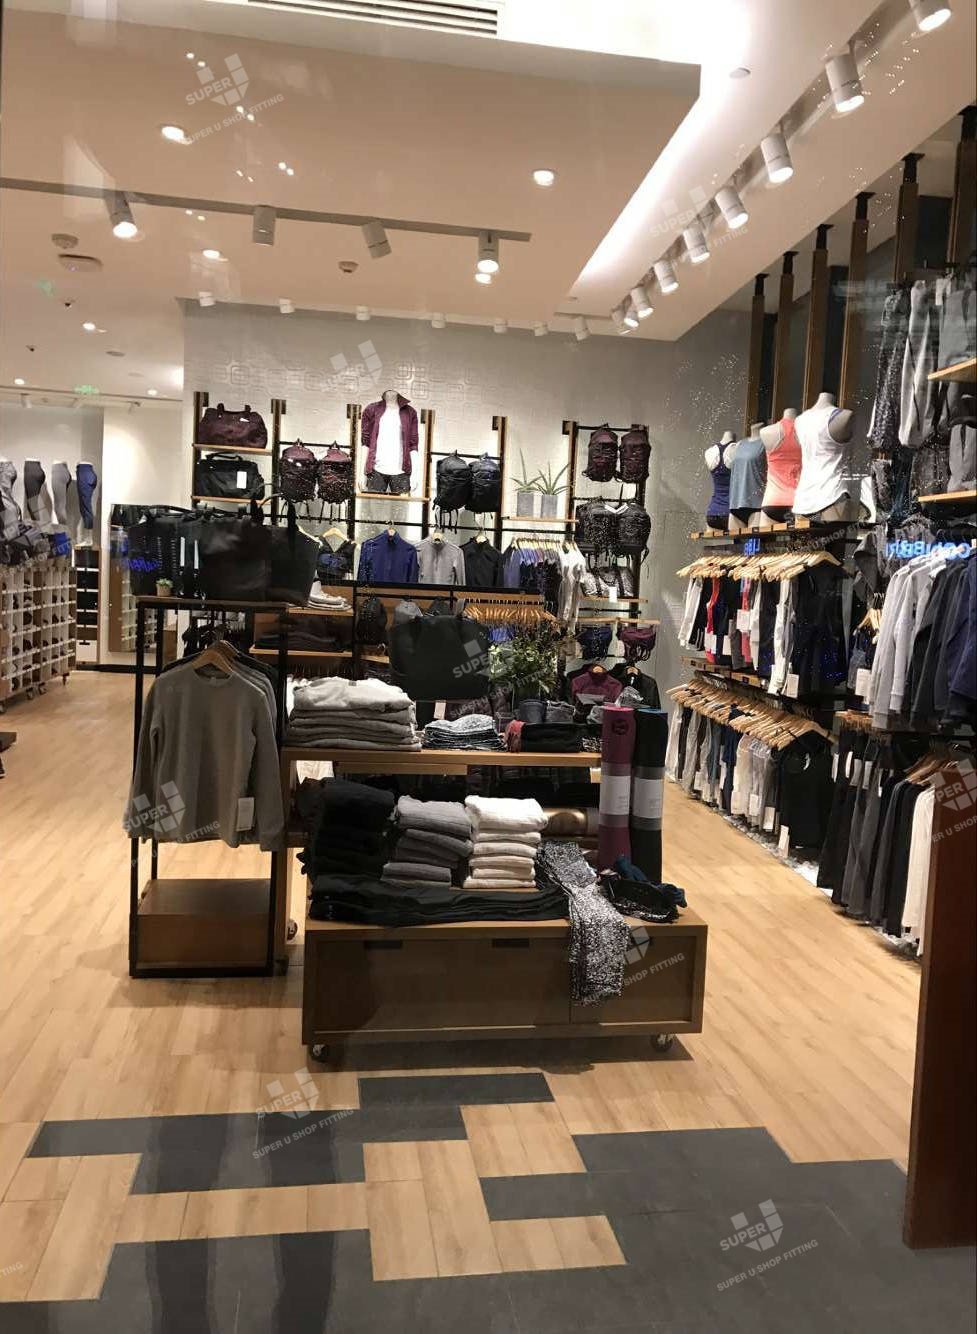 Lululemon plans new athletic wear store in Boise, ID